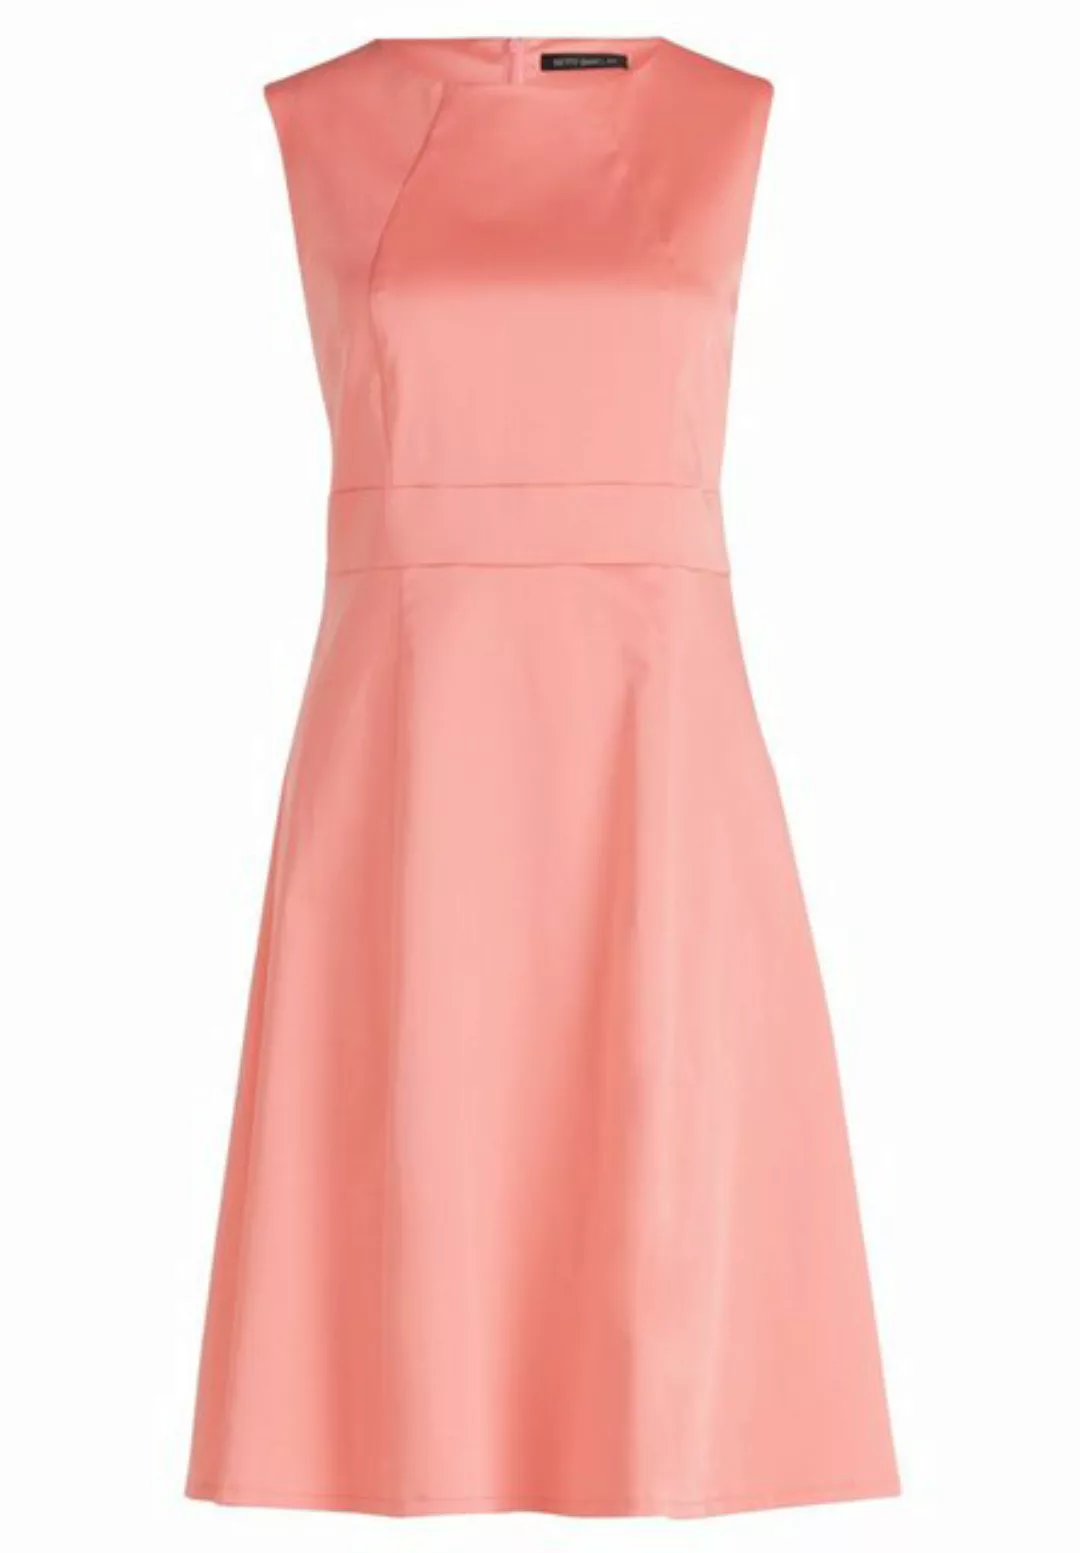 Betty Barclay Sommerkleid Kleid Kurz ohne Arm, Bright Taupe günstig online kaufen